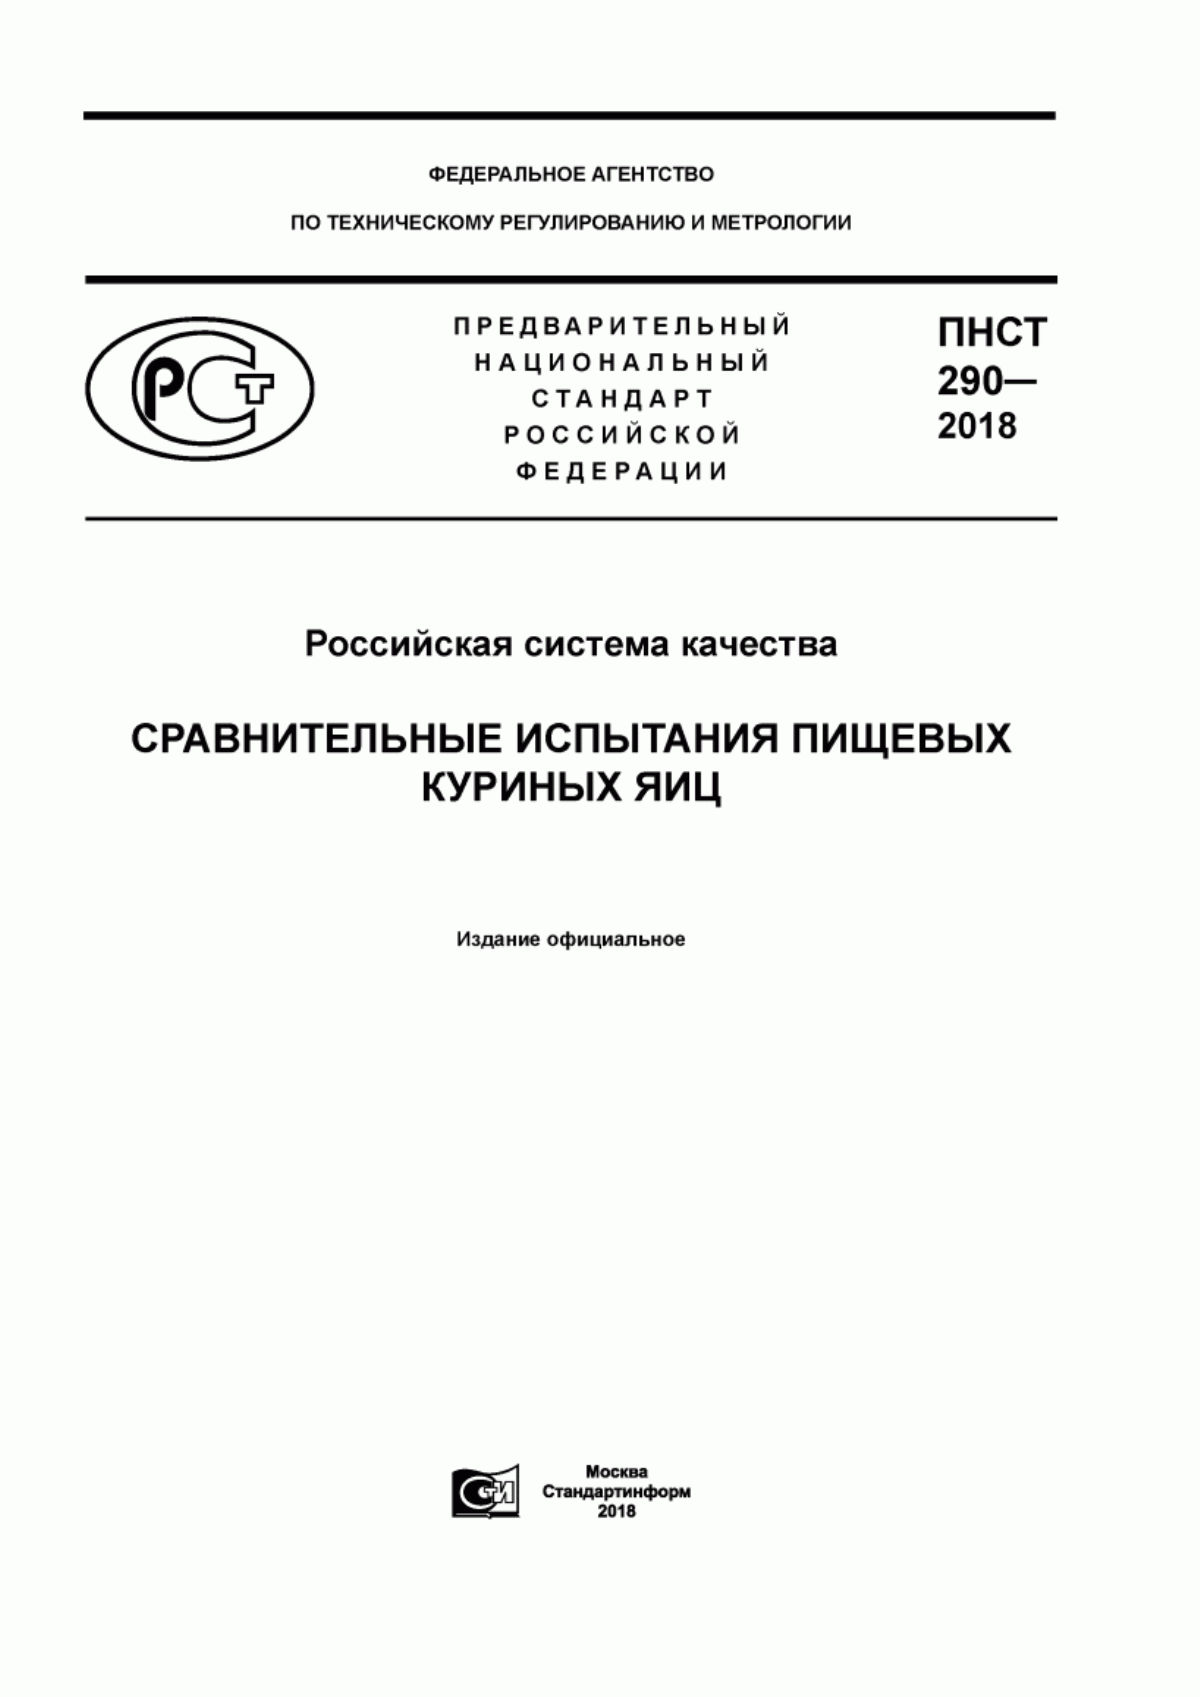 ПНСТ 290-2018 Российская система качества. Сравнительные испытания пищевых куриных яиц